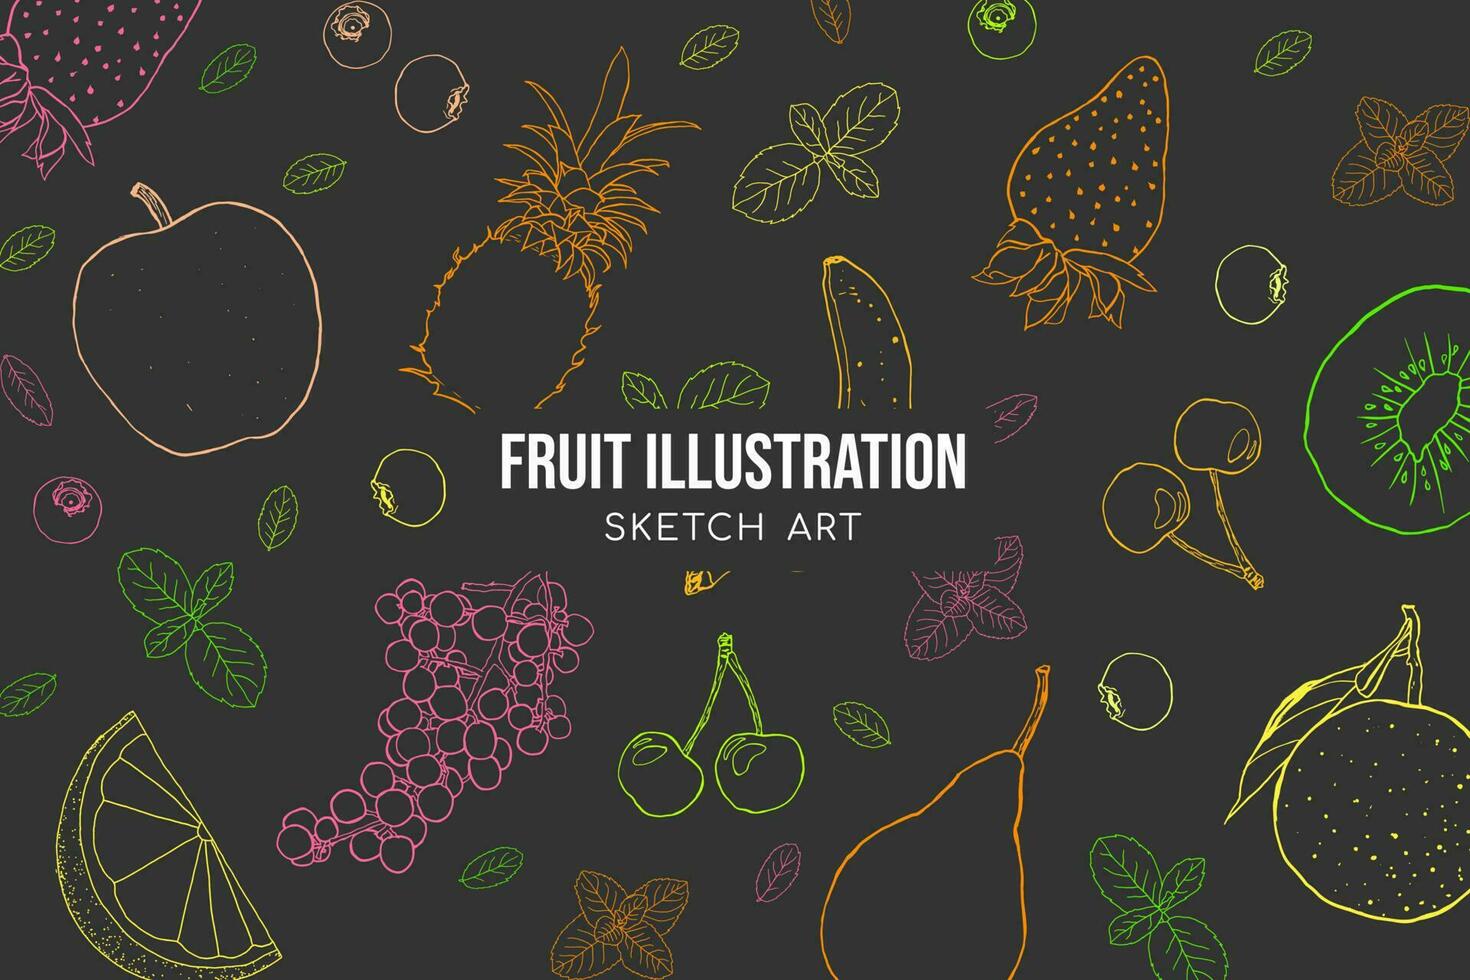 Fruit illustration sketch art background design vector